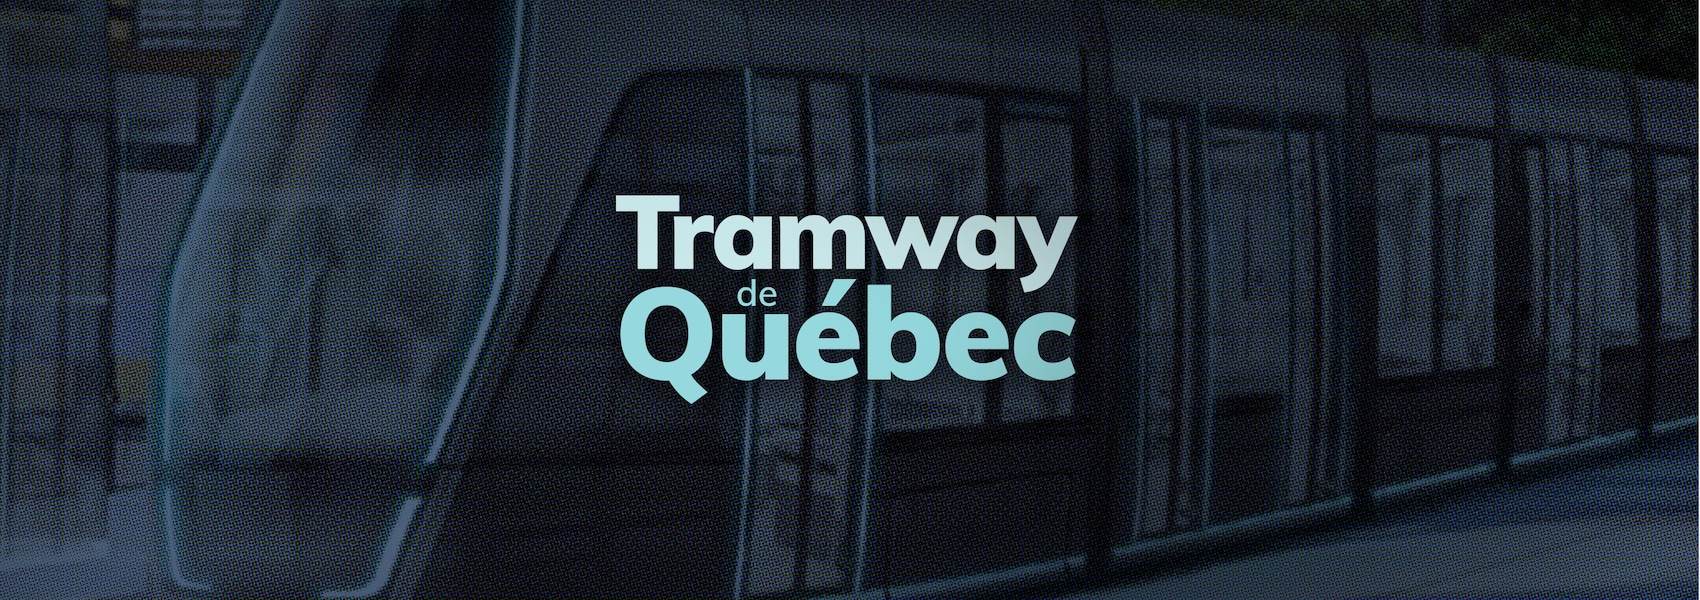 Tout sur le tramway de Québec